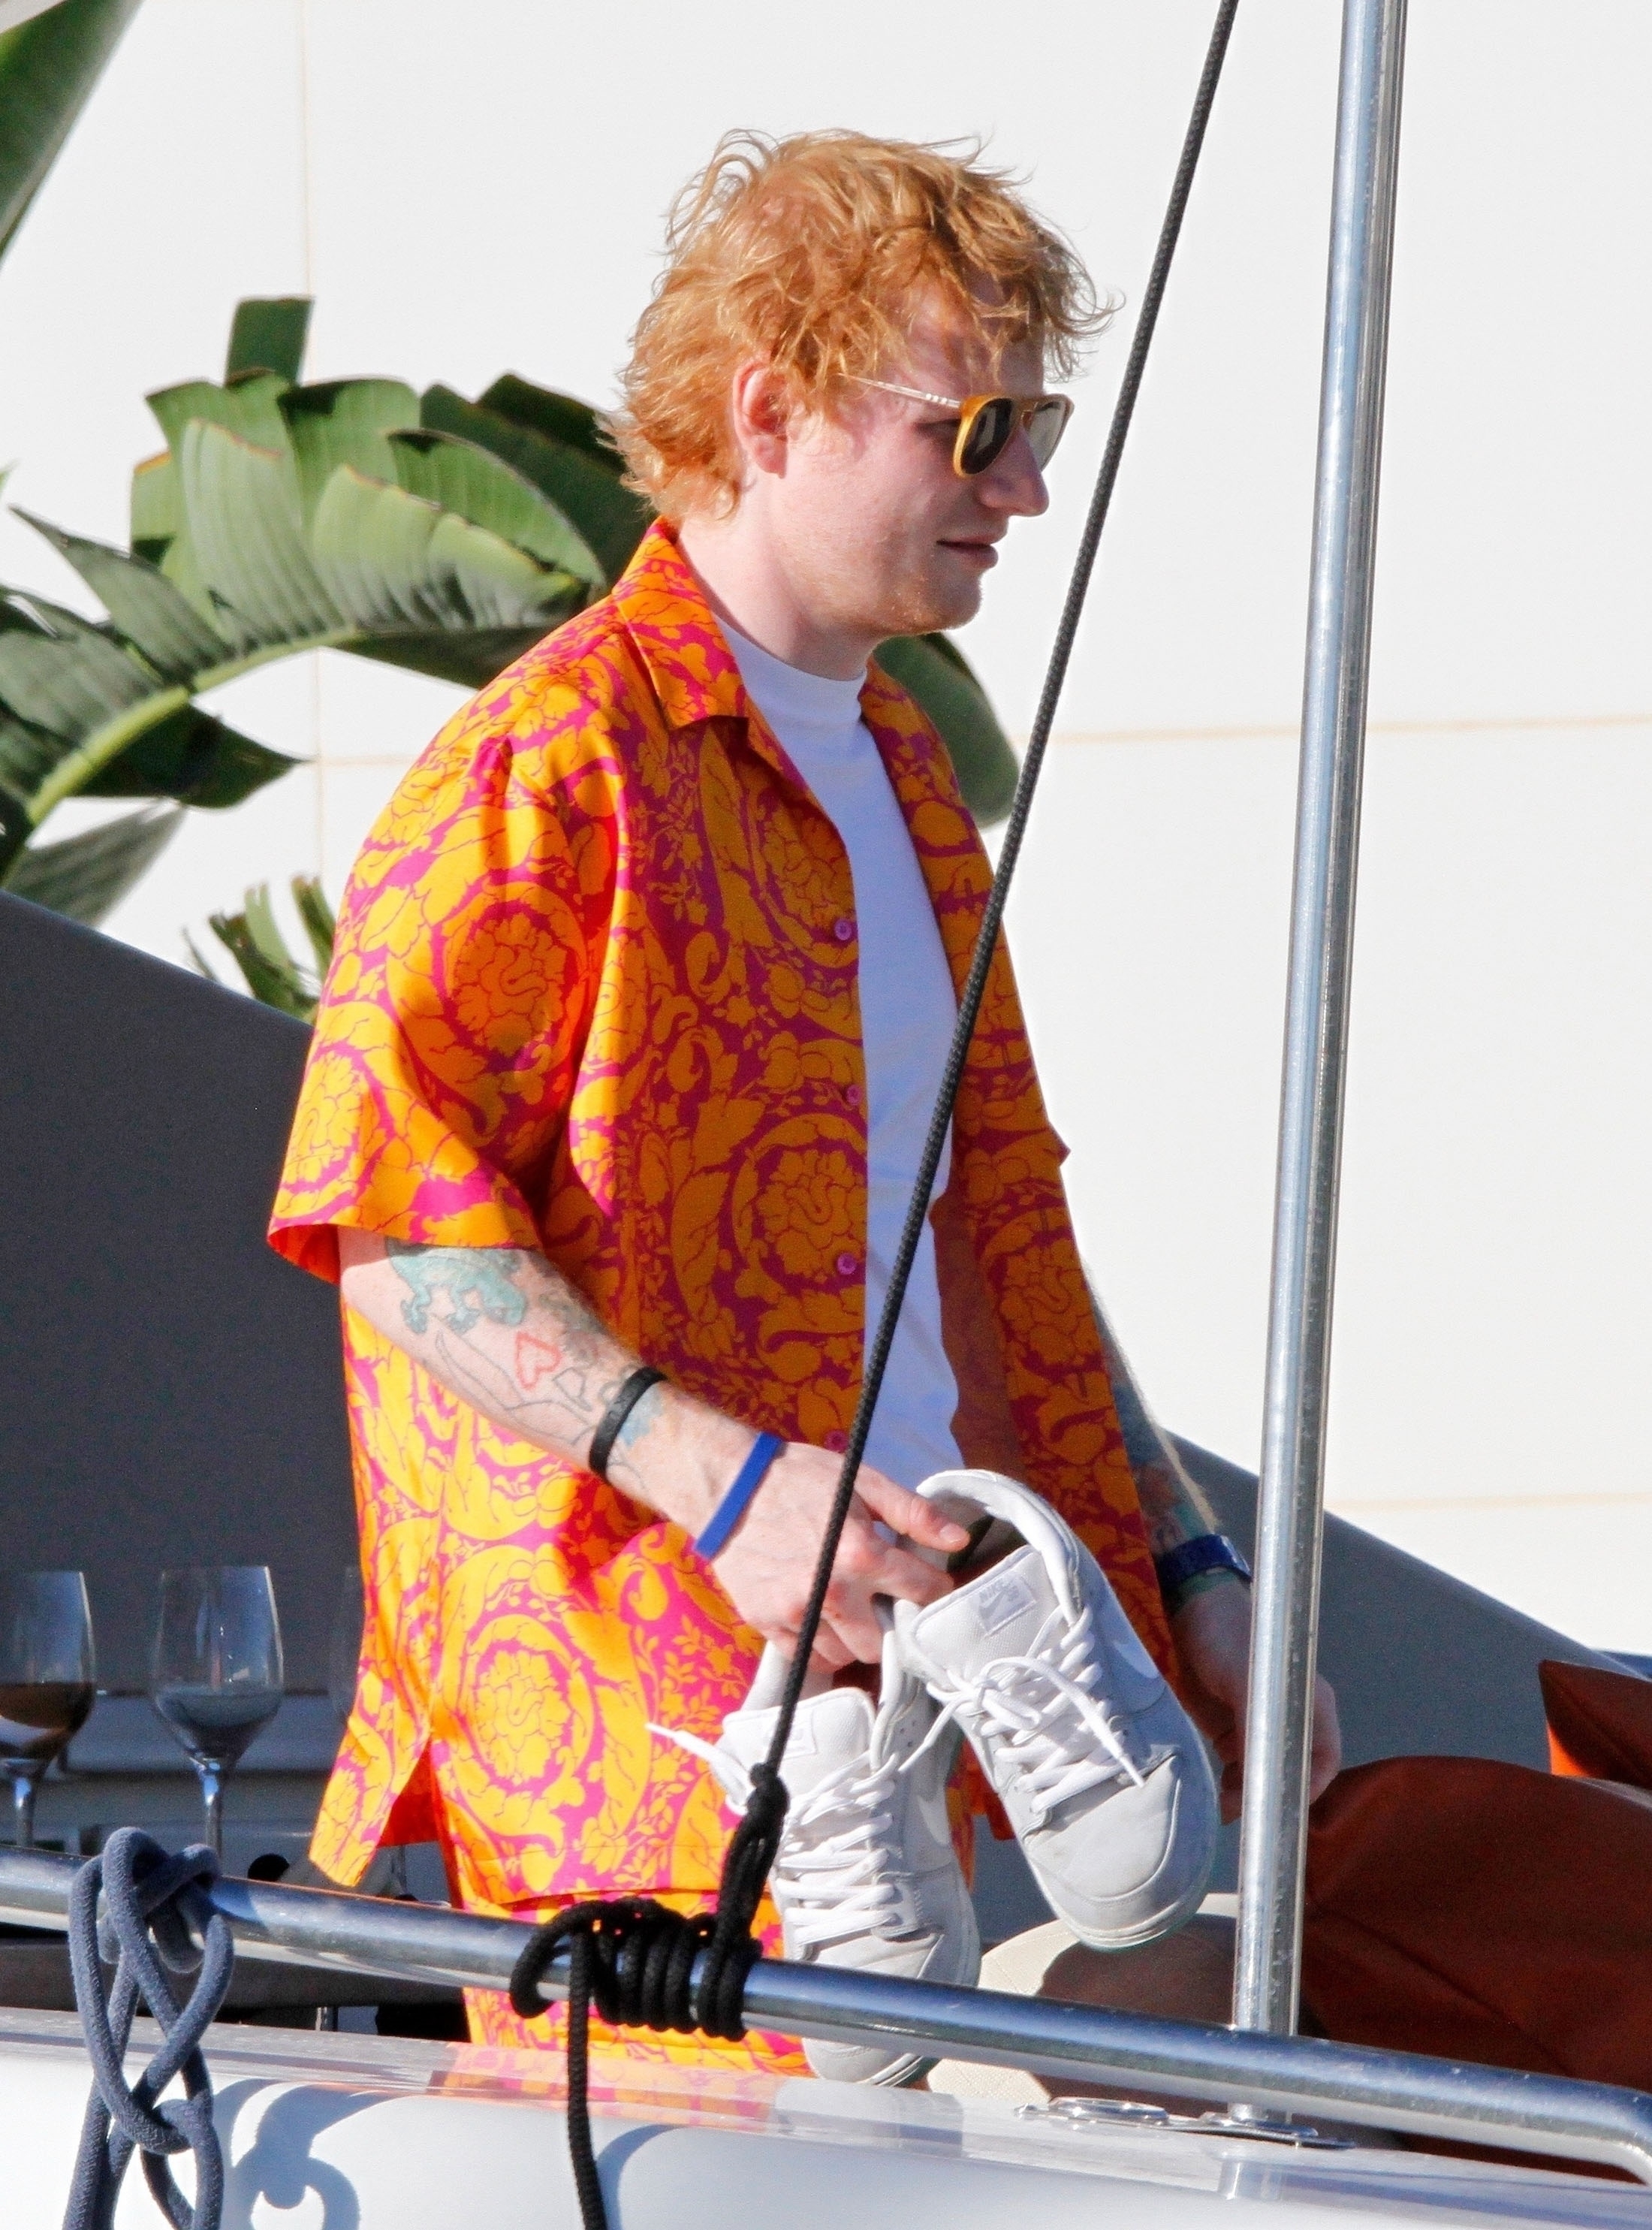 El cantante británico Ed Sheeran disfruta de unos días de descanso en Ibiza, donde se lo fotografió en un barco y con un atuendo muy particular:  un conjunto de pantalón y remara Versace amarillo y naranja